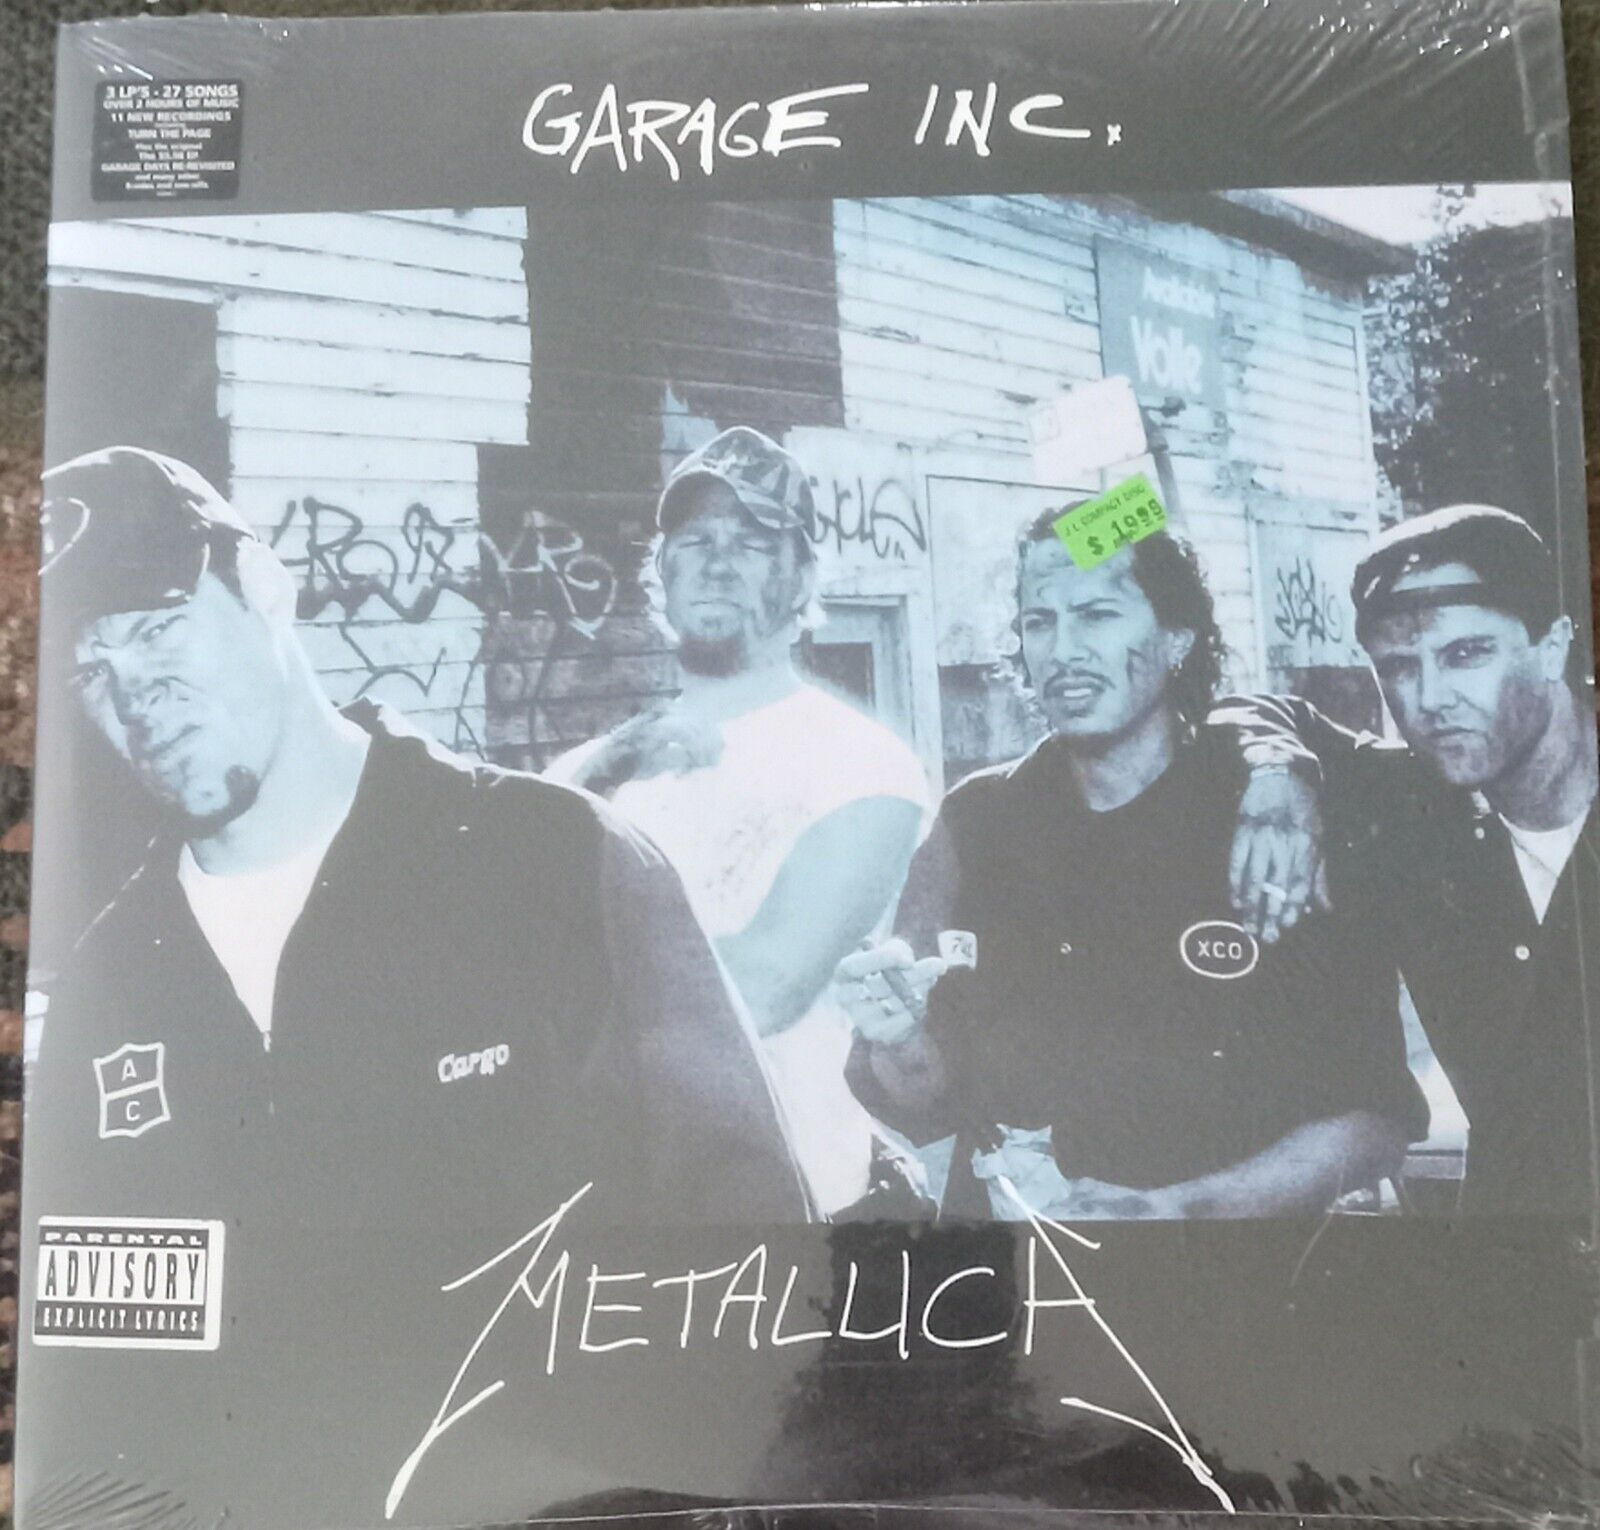 Metallica "Garage Days" First Press Vinyl Album 3 Lp